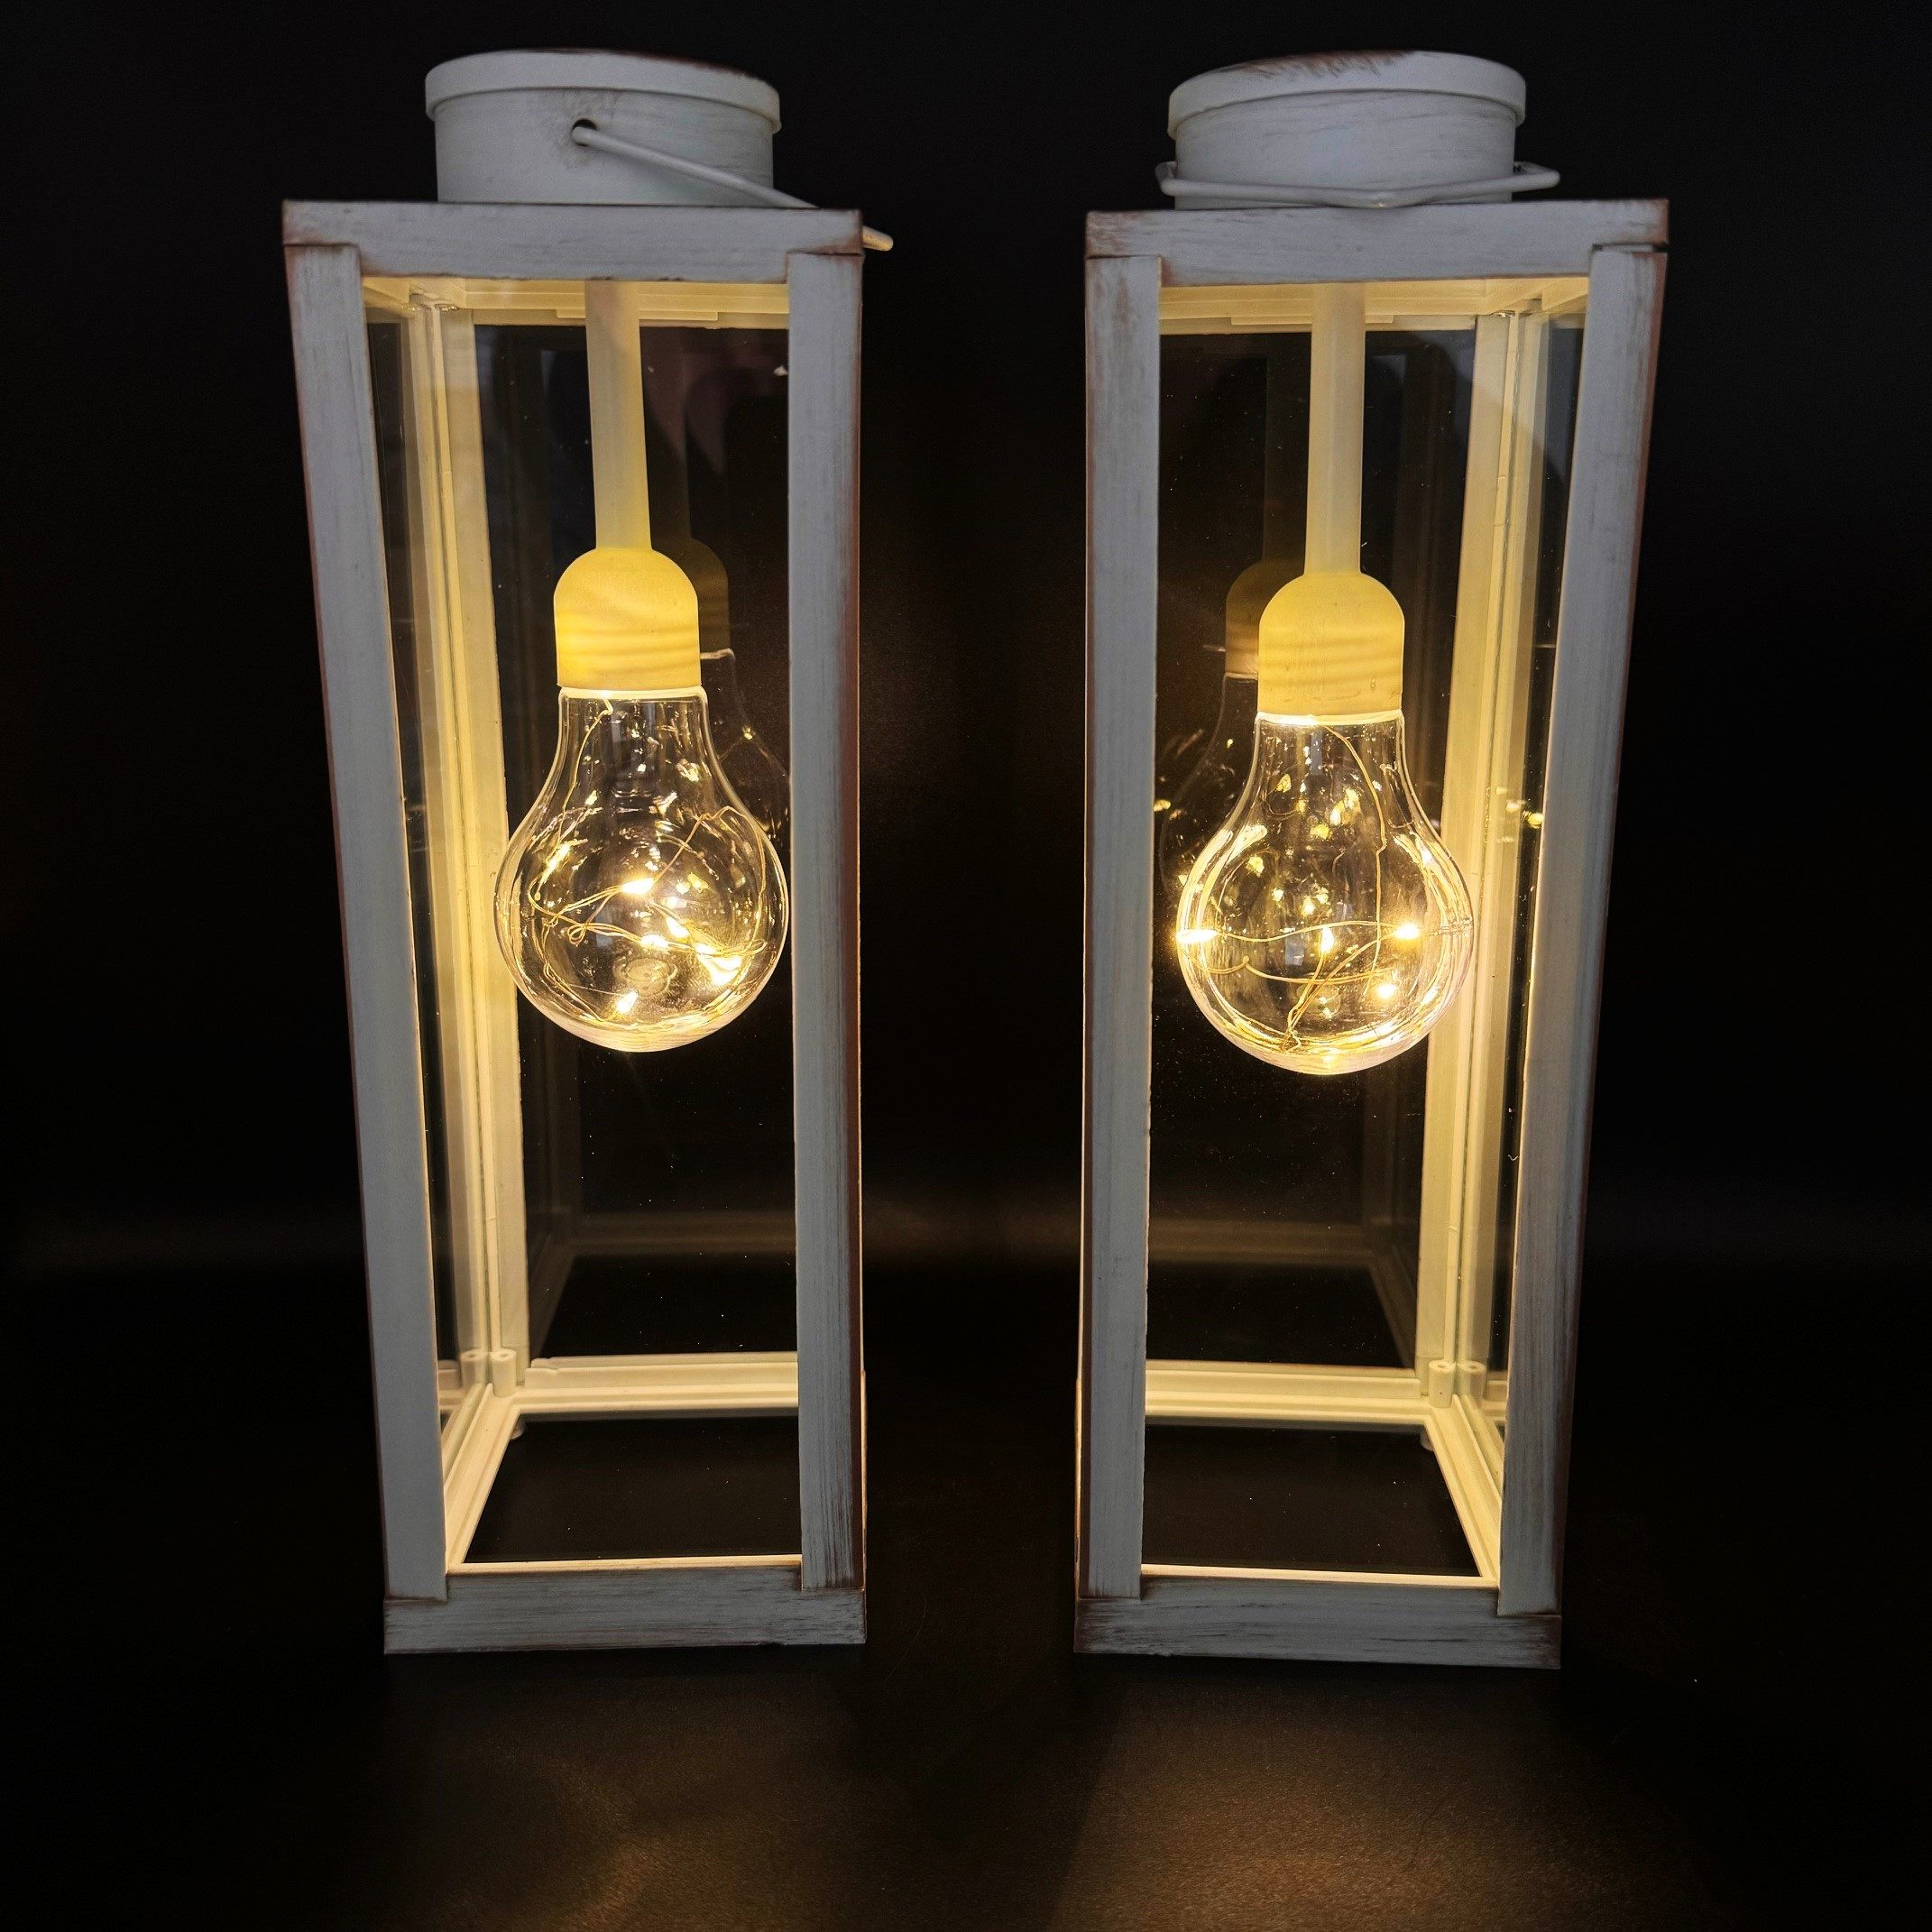 Online-Fuchs LED Laterne 2 Фонари Set im Vintage Look - Outdoor geeignet, Glühbirne mit LED-Lichterkette und Timer, Warmweiß, Weiß oder Schwarz - 30 cm groß